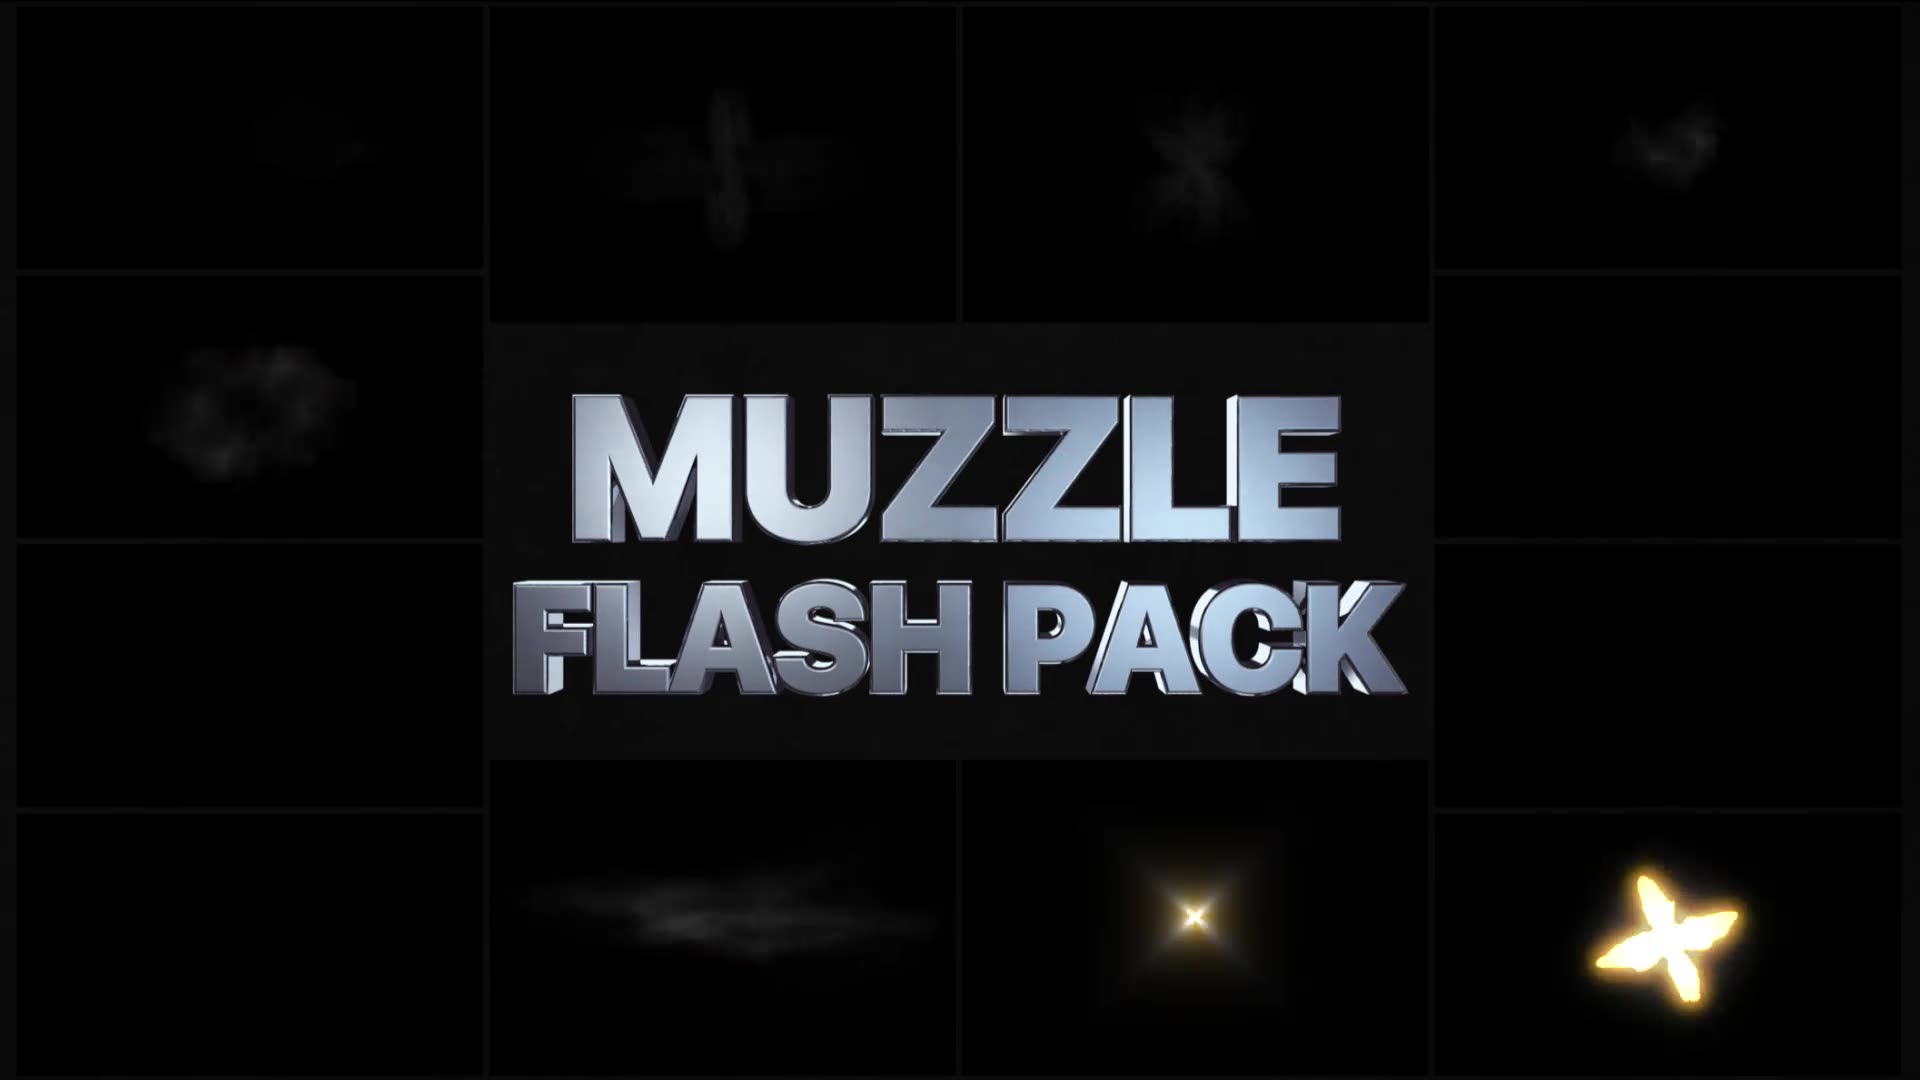 Muzzle Flash Pack | Premiere Pro MOGRT Videohive 29238154 Premiere Pro Image 2